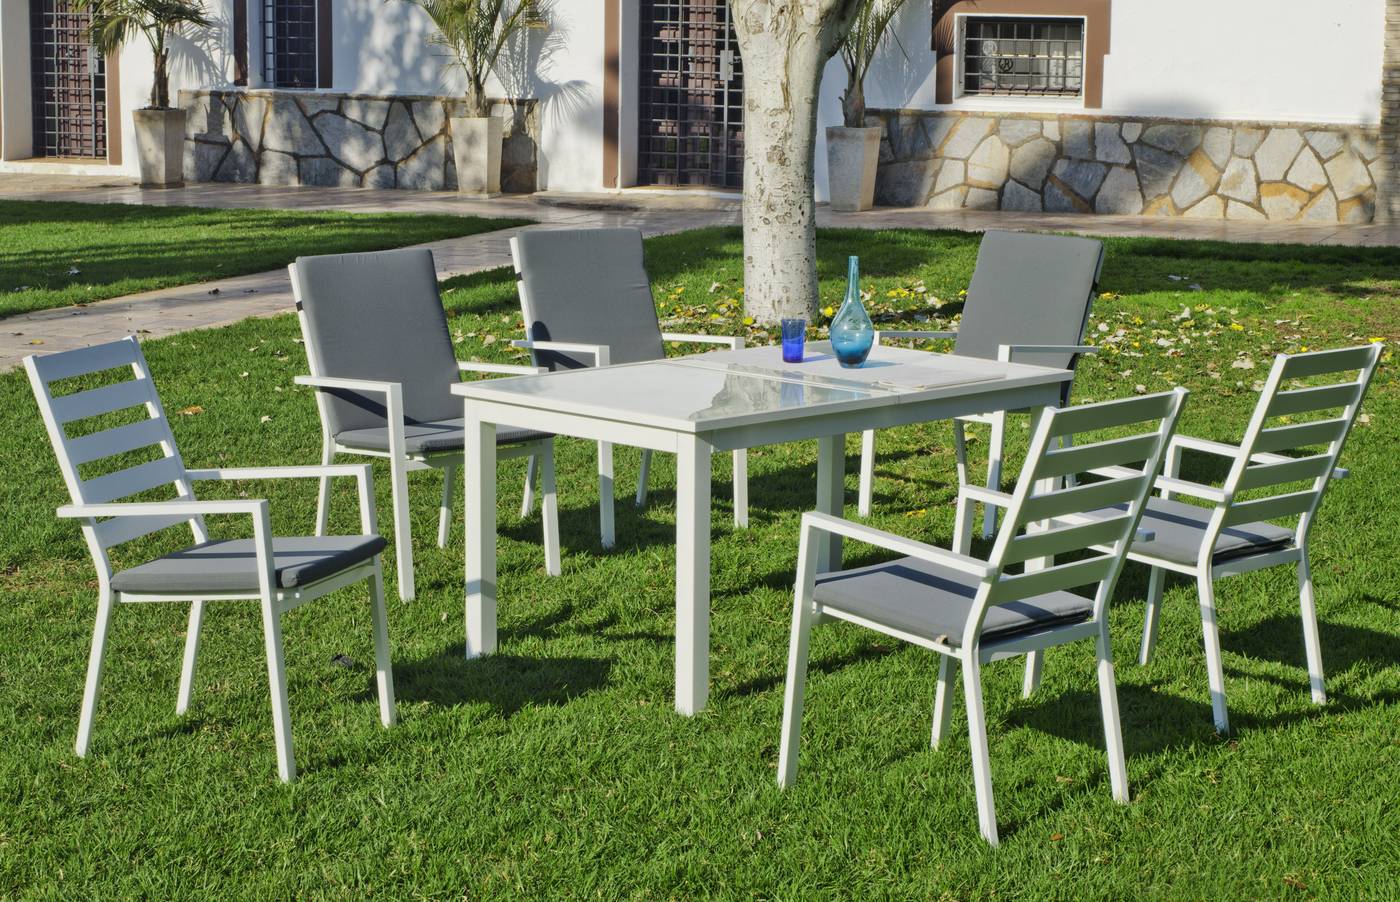 Conjunto aluminio color blanco: mesa extensible 150 a 200 cm. y 6 sillones apilables